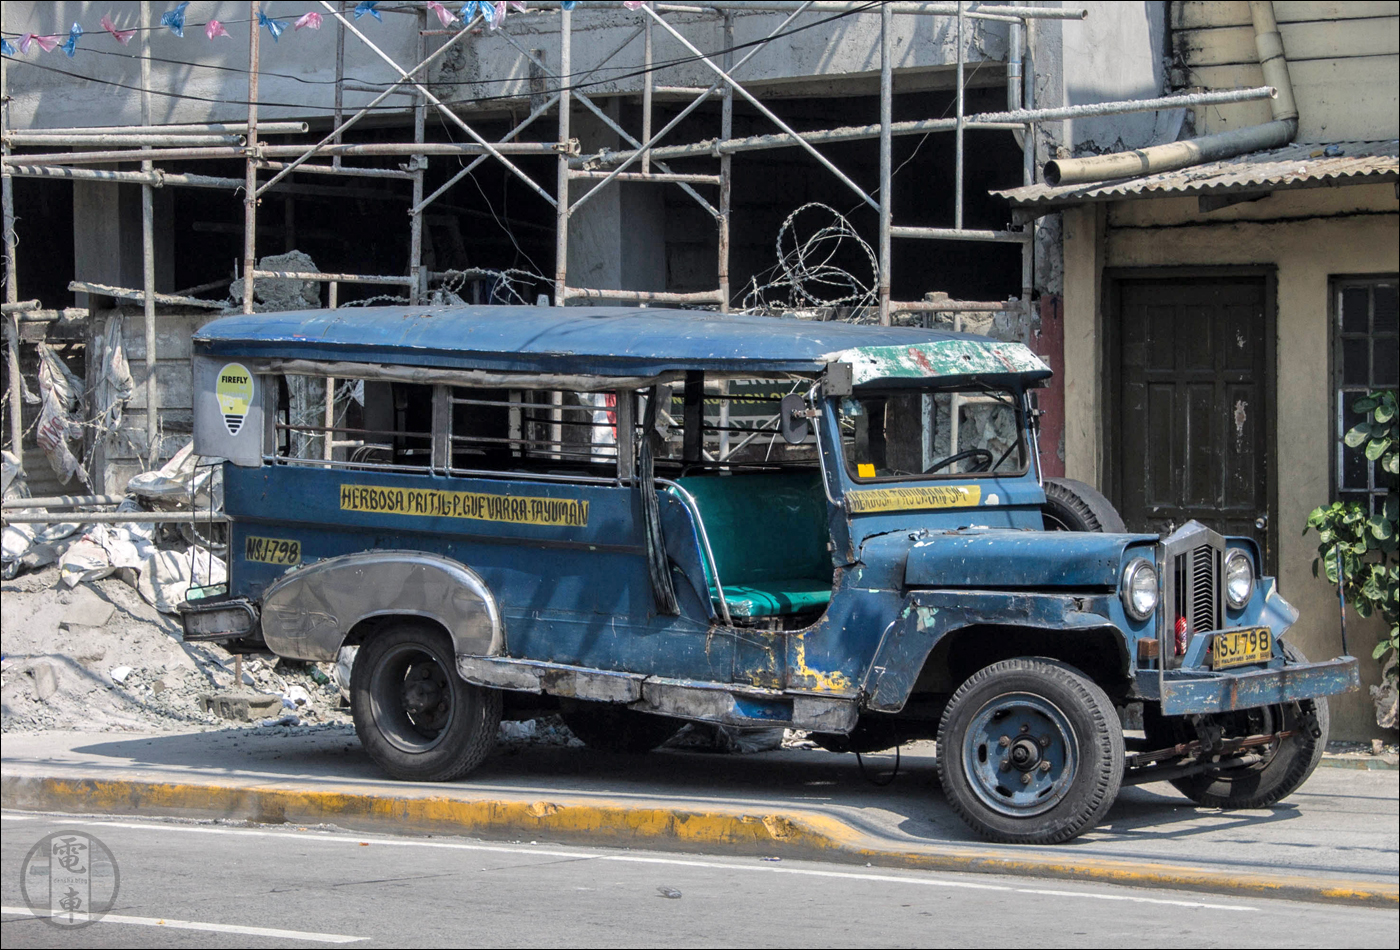 Manila és a legtöbb filippinó nagyváros jellegzetes tömegközlekedési járműve a „jeepney”, mely a „jeep” és „jitney” (shared taxi) szavakból alakult ki. Az első jeepney-ket még a második világháború után hátrahagyott amerikai terepjárókból alakították ki, napjainkban azonban már közel két tucat gyártó termeli a Fülöp-szigetek utcáinak meghatározó elemeit.